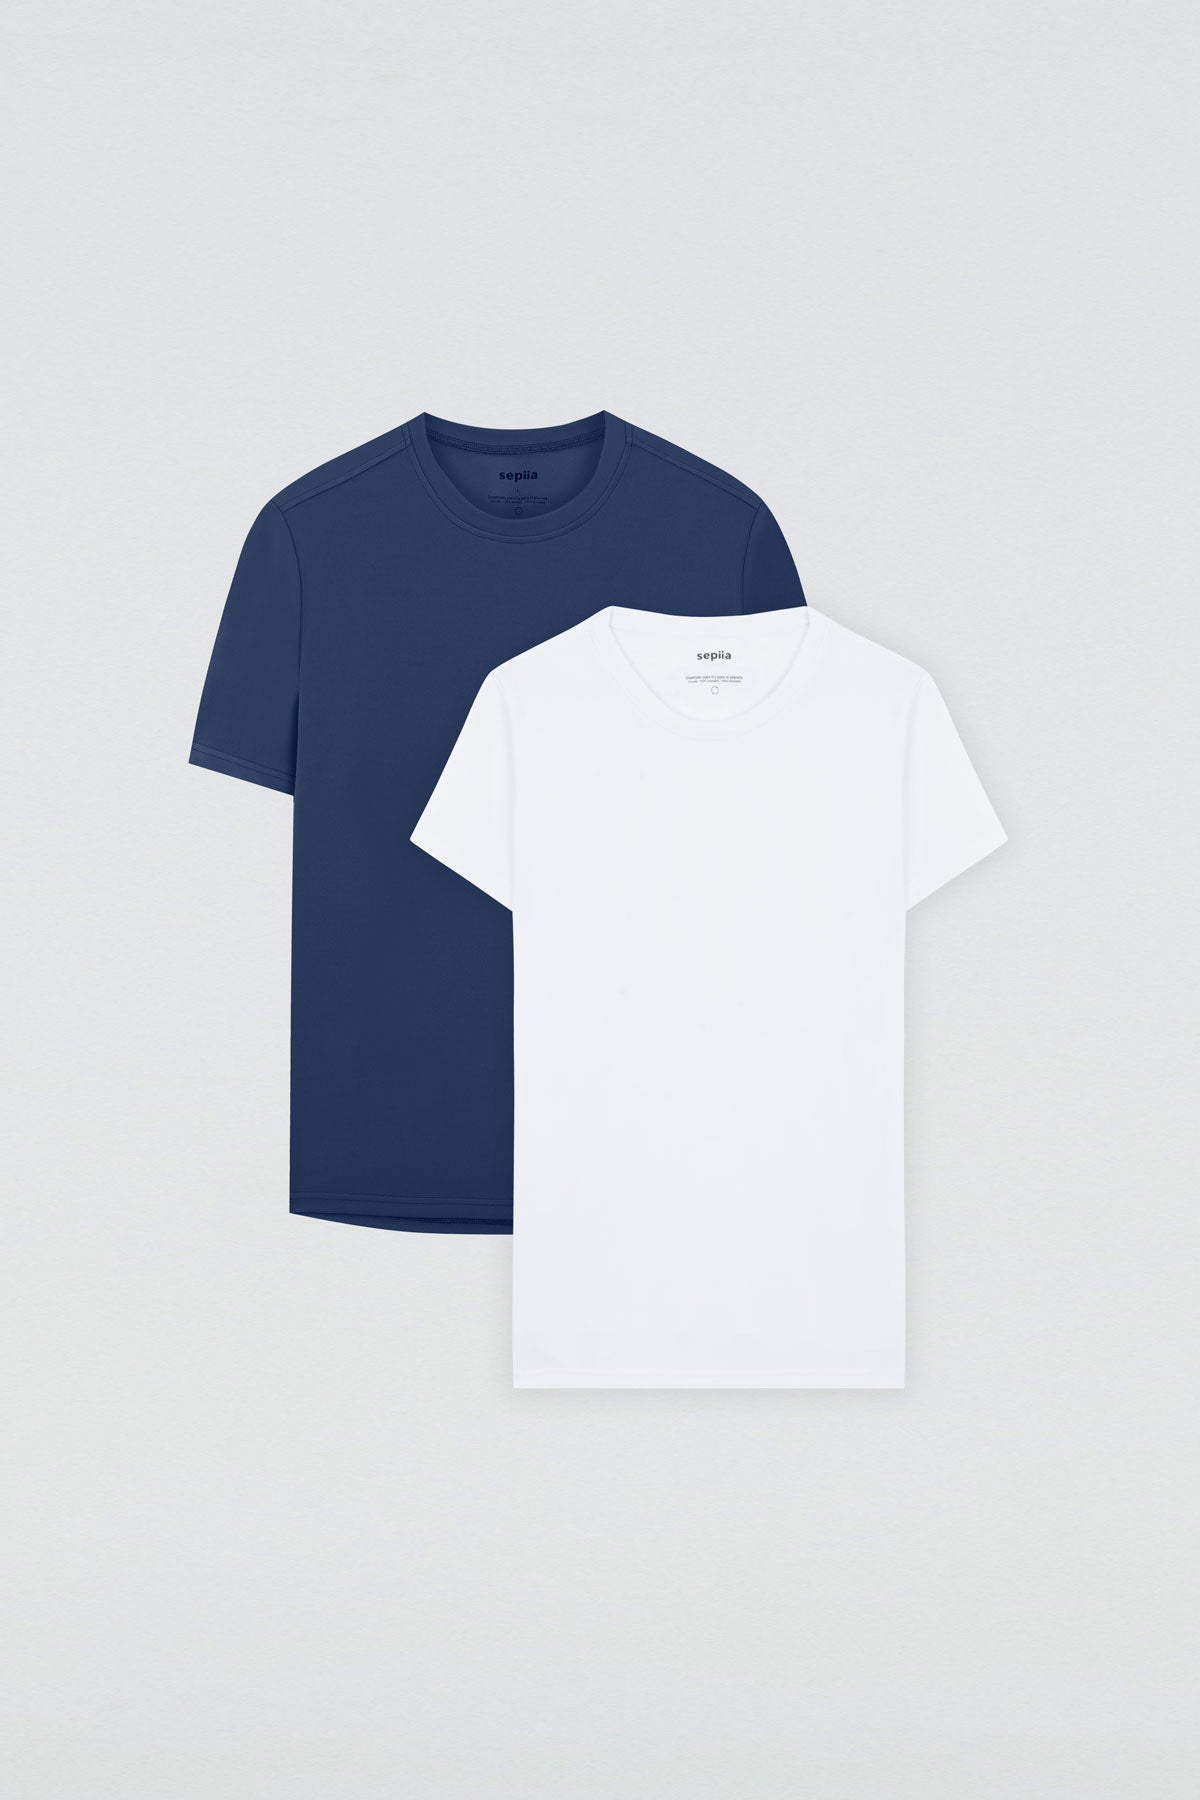 Men's T-shirt + Women's T-shirt Pack ∞